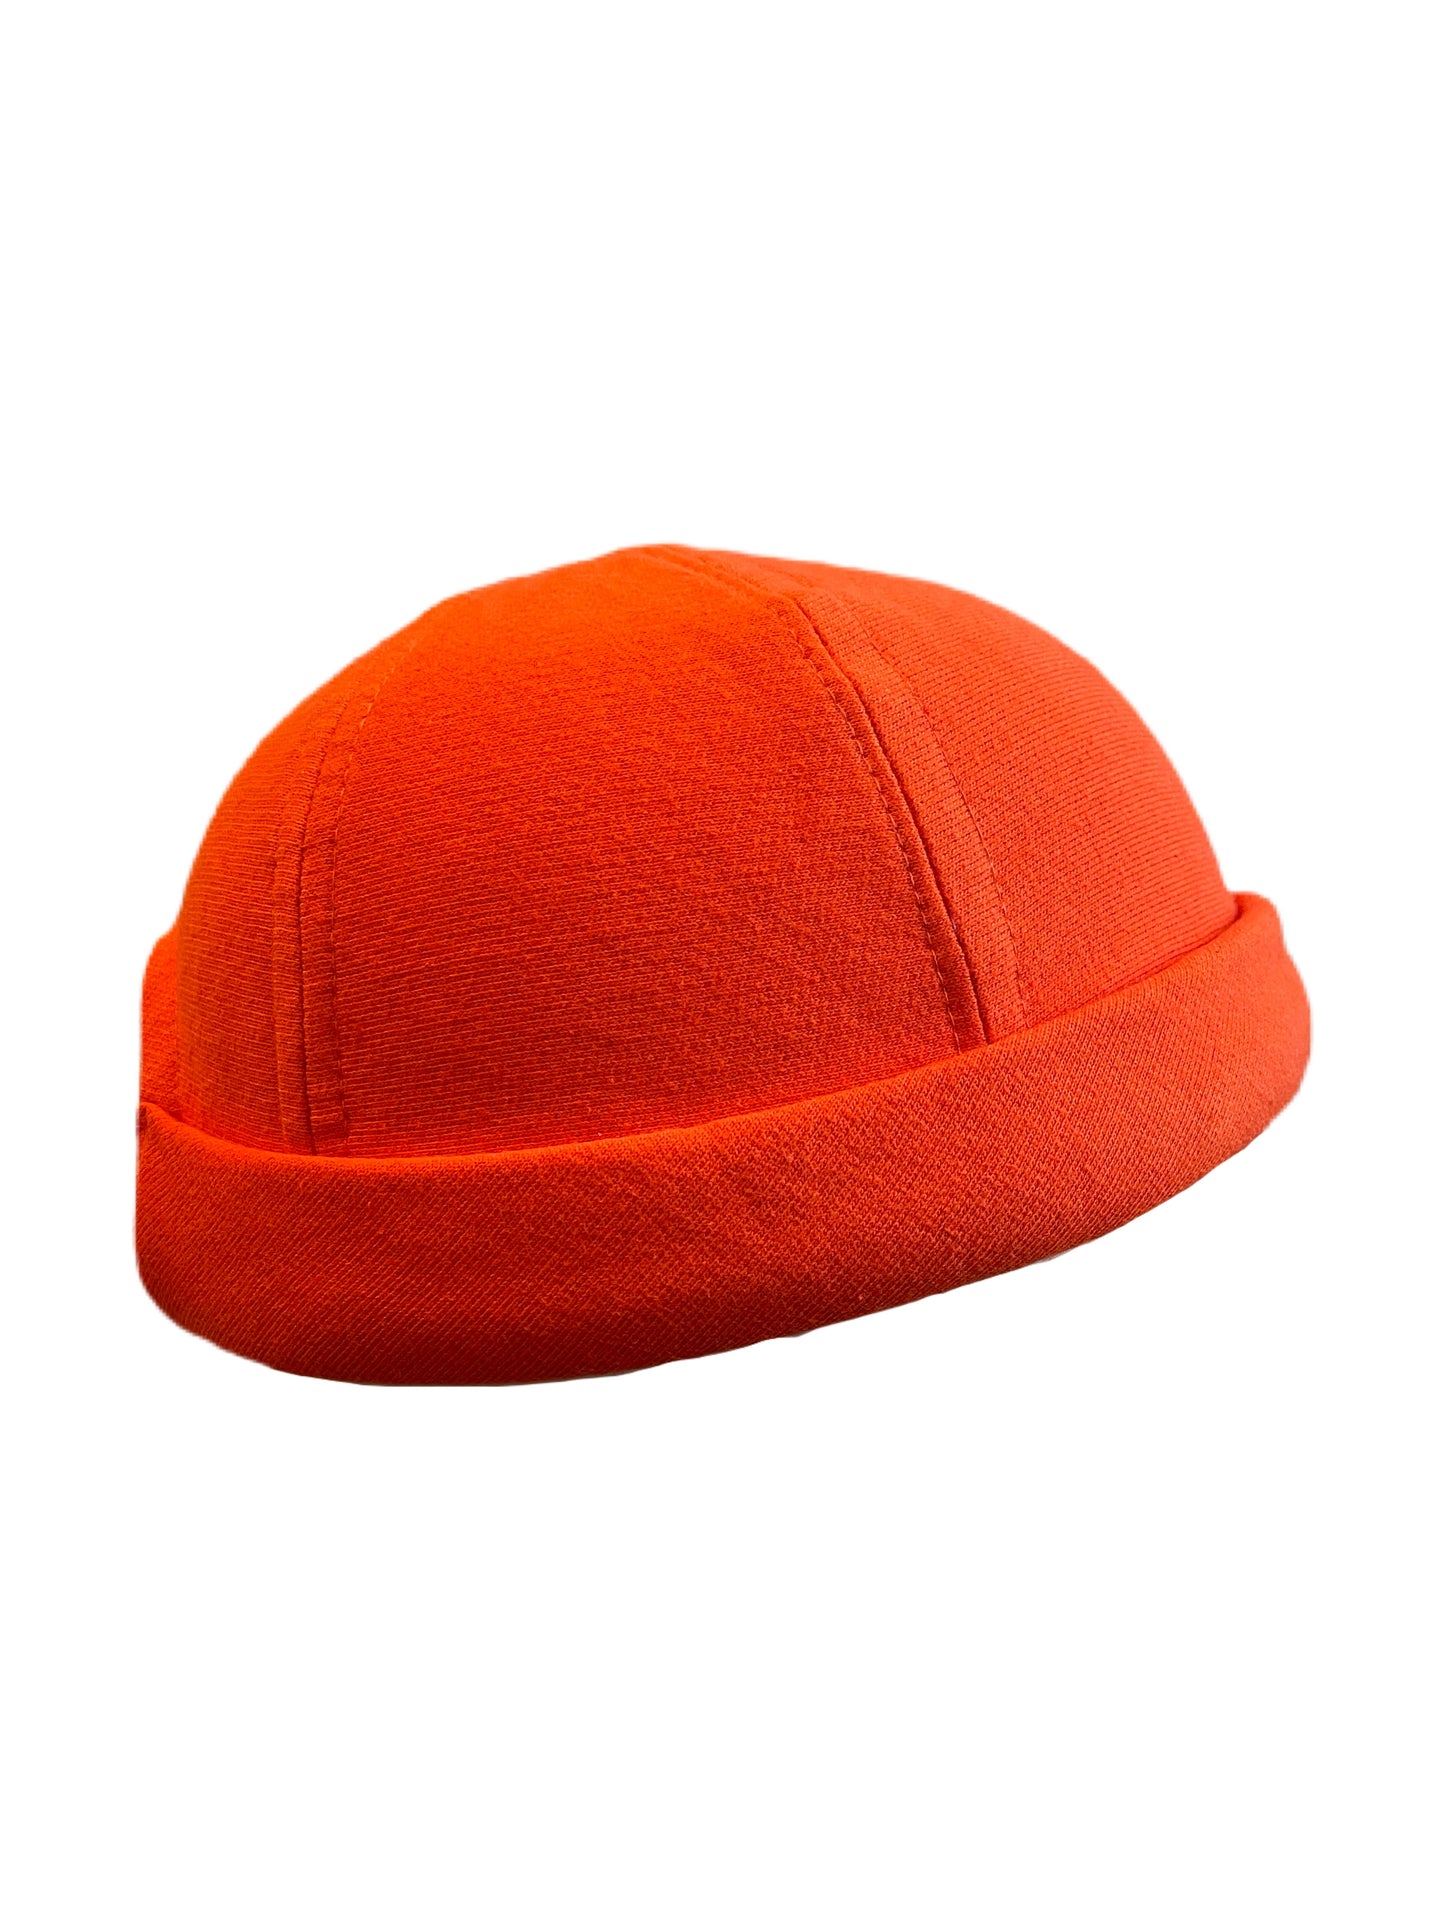 Orange Knit CrewCap [OG]